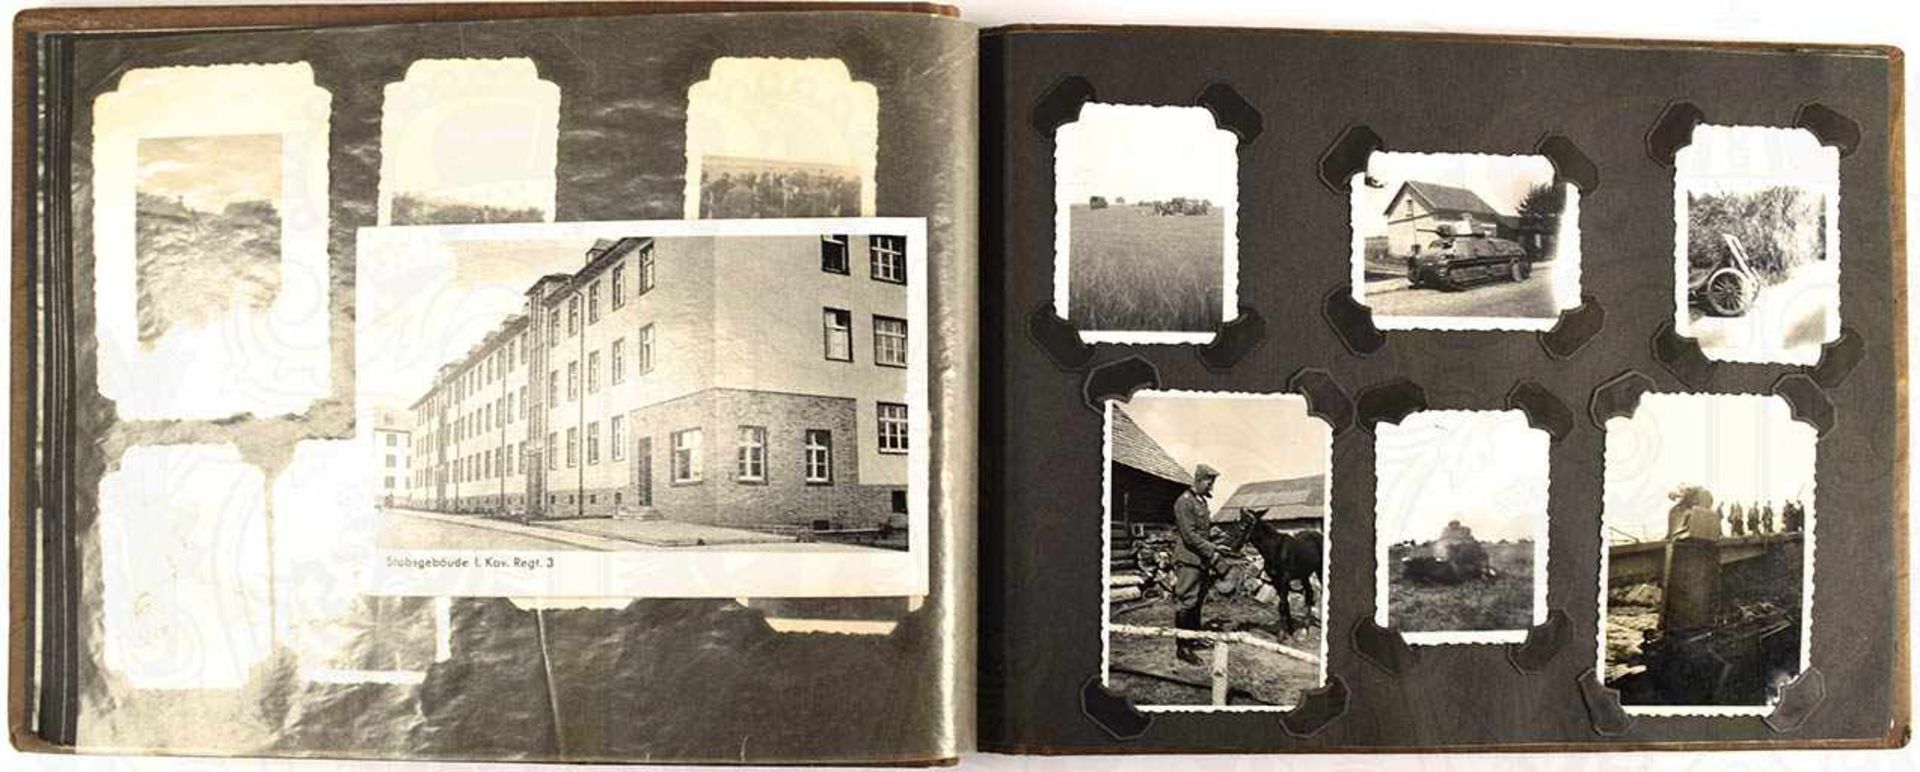 FOTOALBUM EINER RADFAHR-AUFKLÄRUNGS-SCHWADRON, gebildet a. d. Kavallerie-Rgt. 3, m. 148 Fotos,